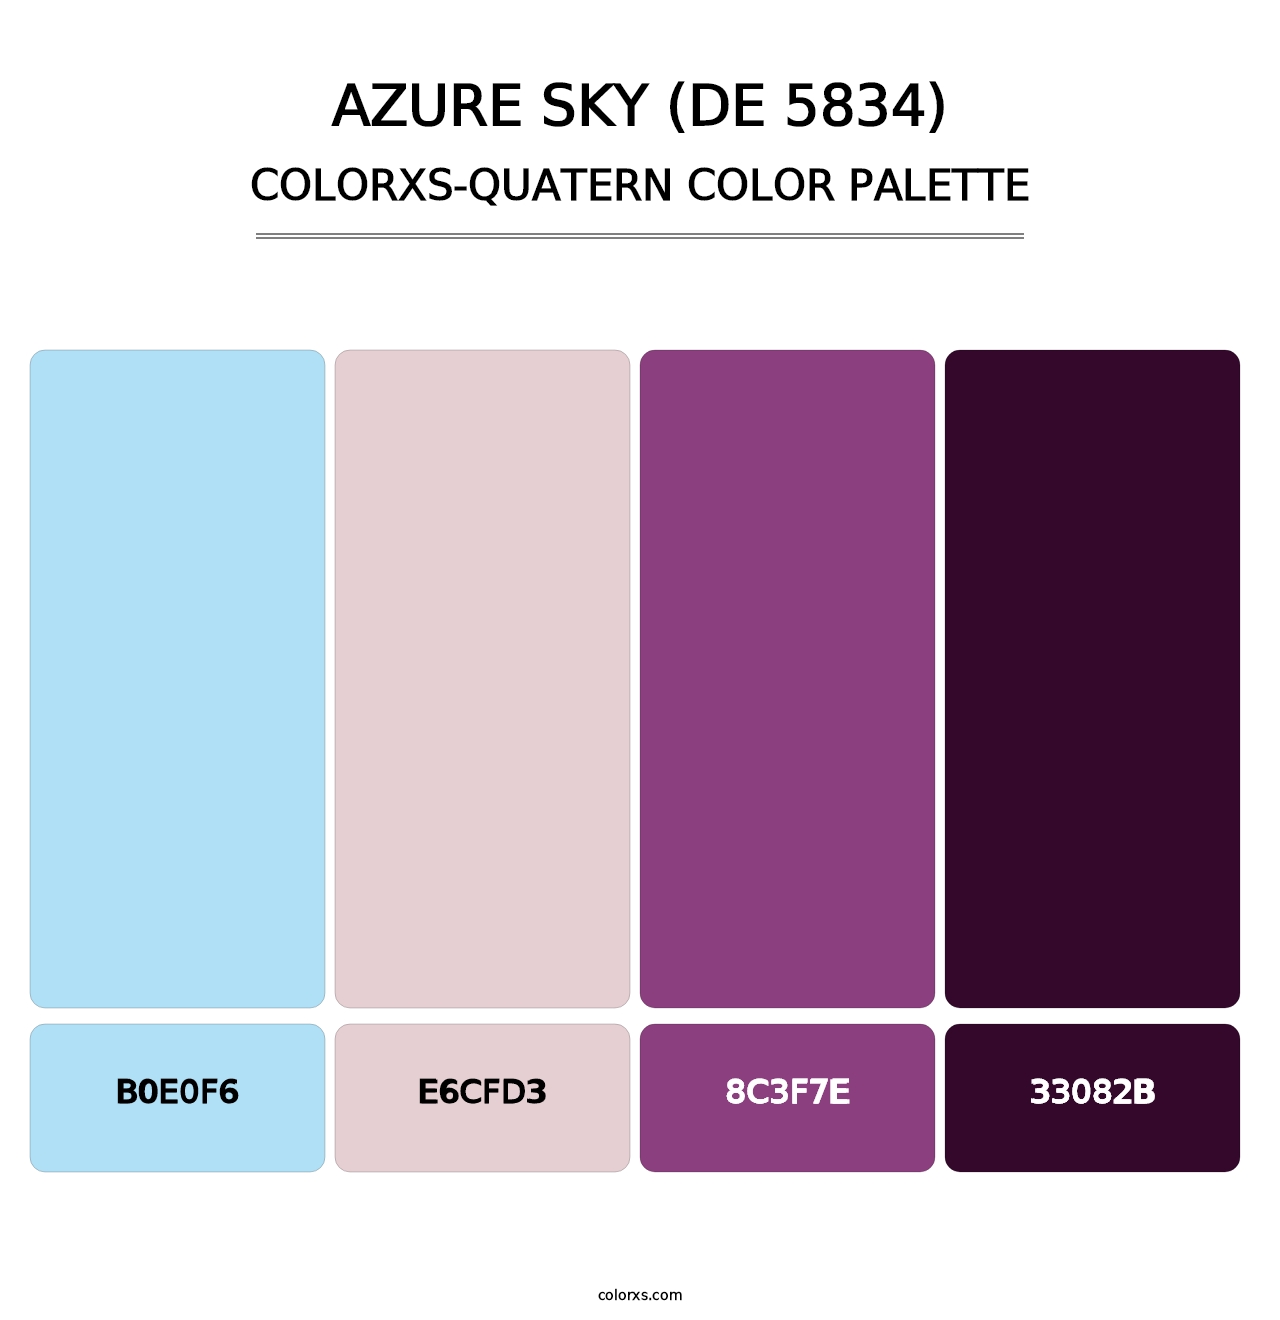 Azure Sky (DE 5834) - Colorxs Quatern Palette